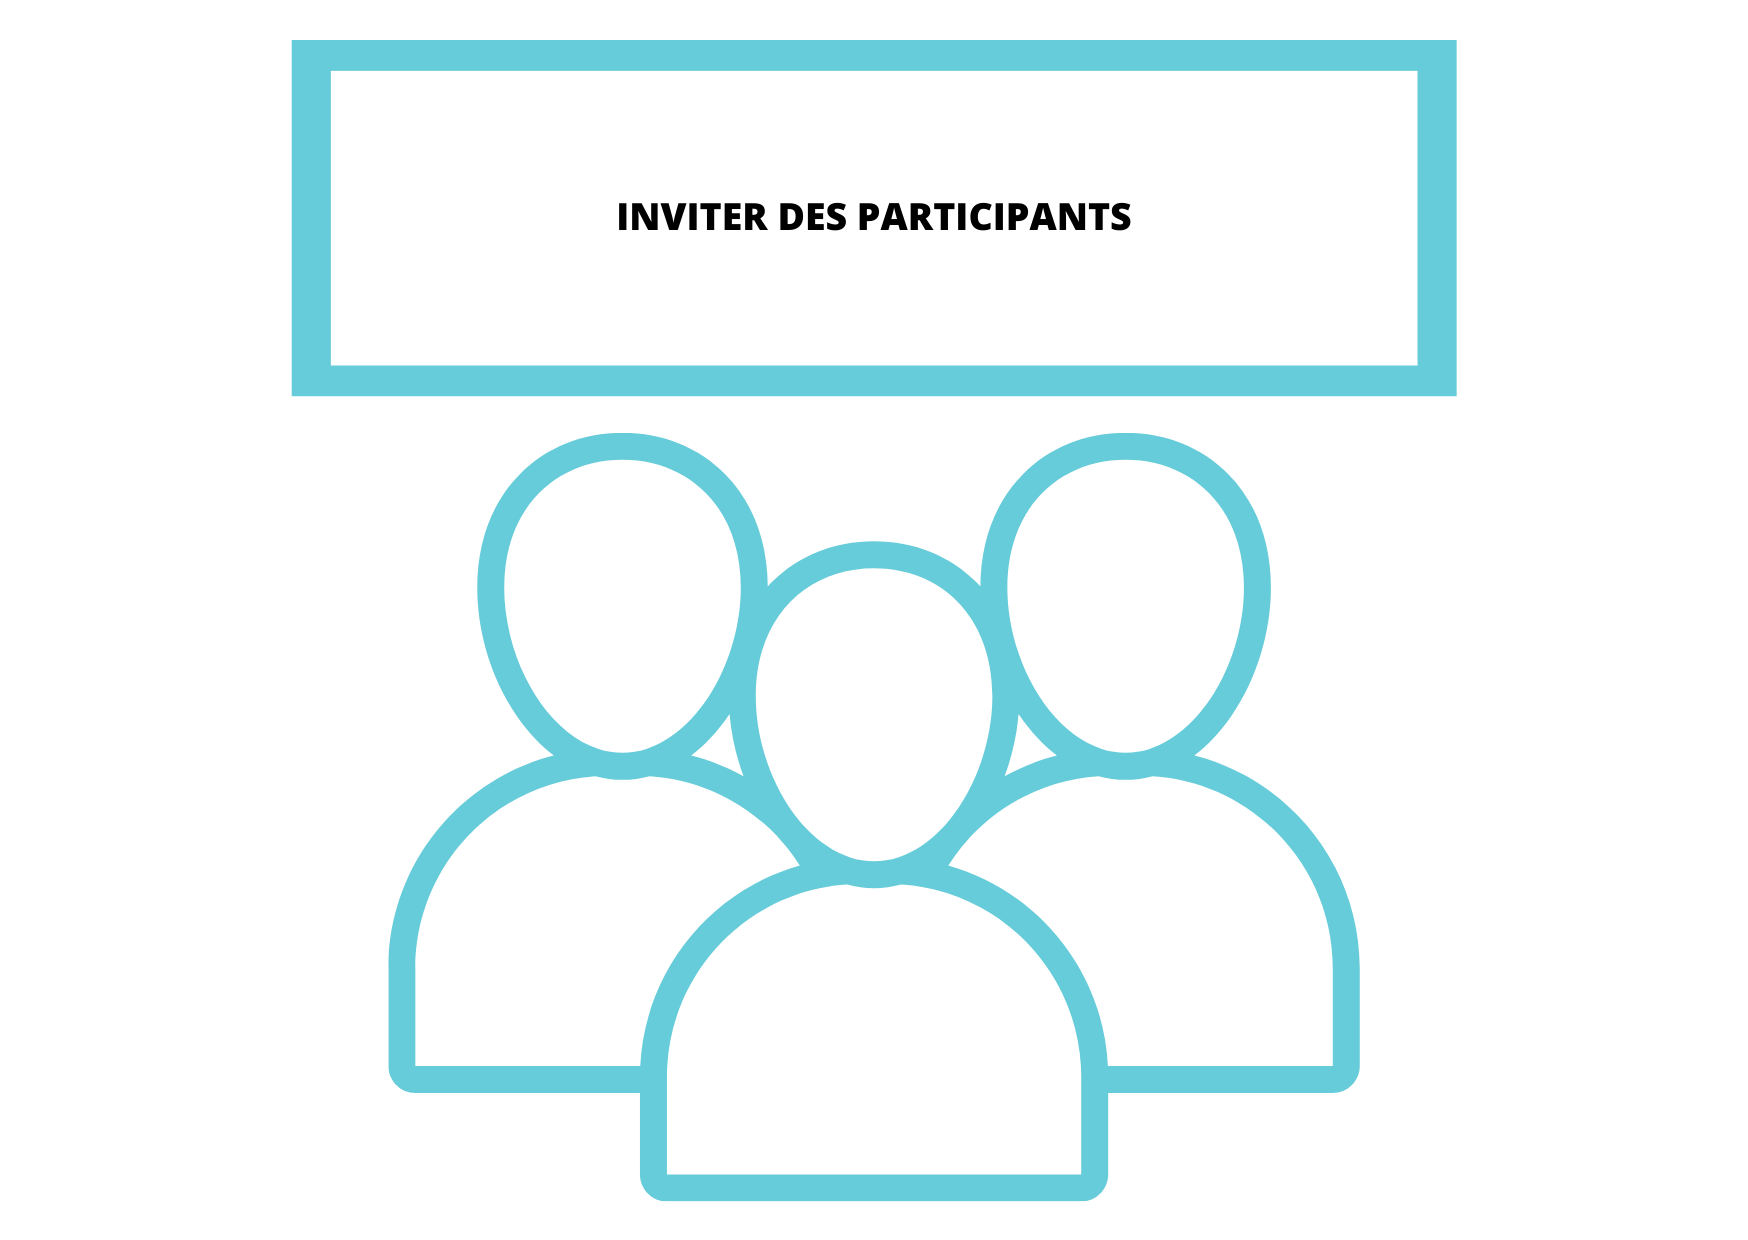 Inviter des participants